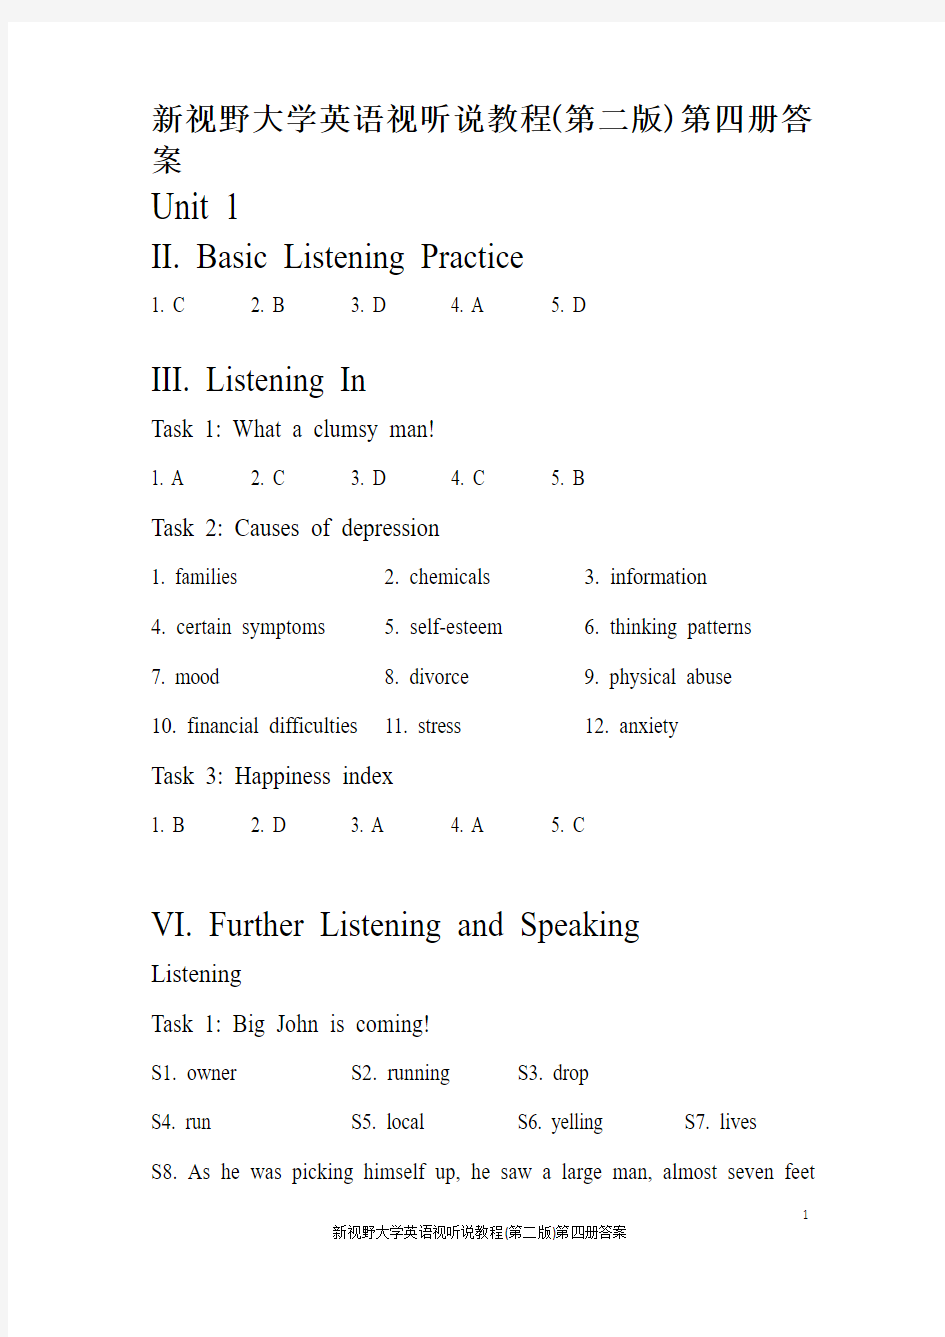 新视野大学英语视听说教程(第二版)第四册答案【答案清晰对应有保证】【全新完整】